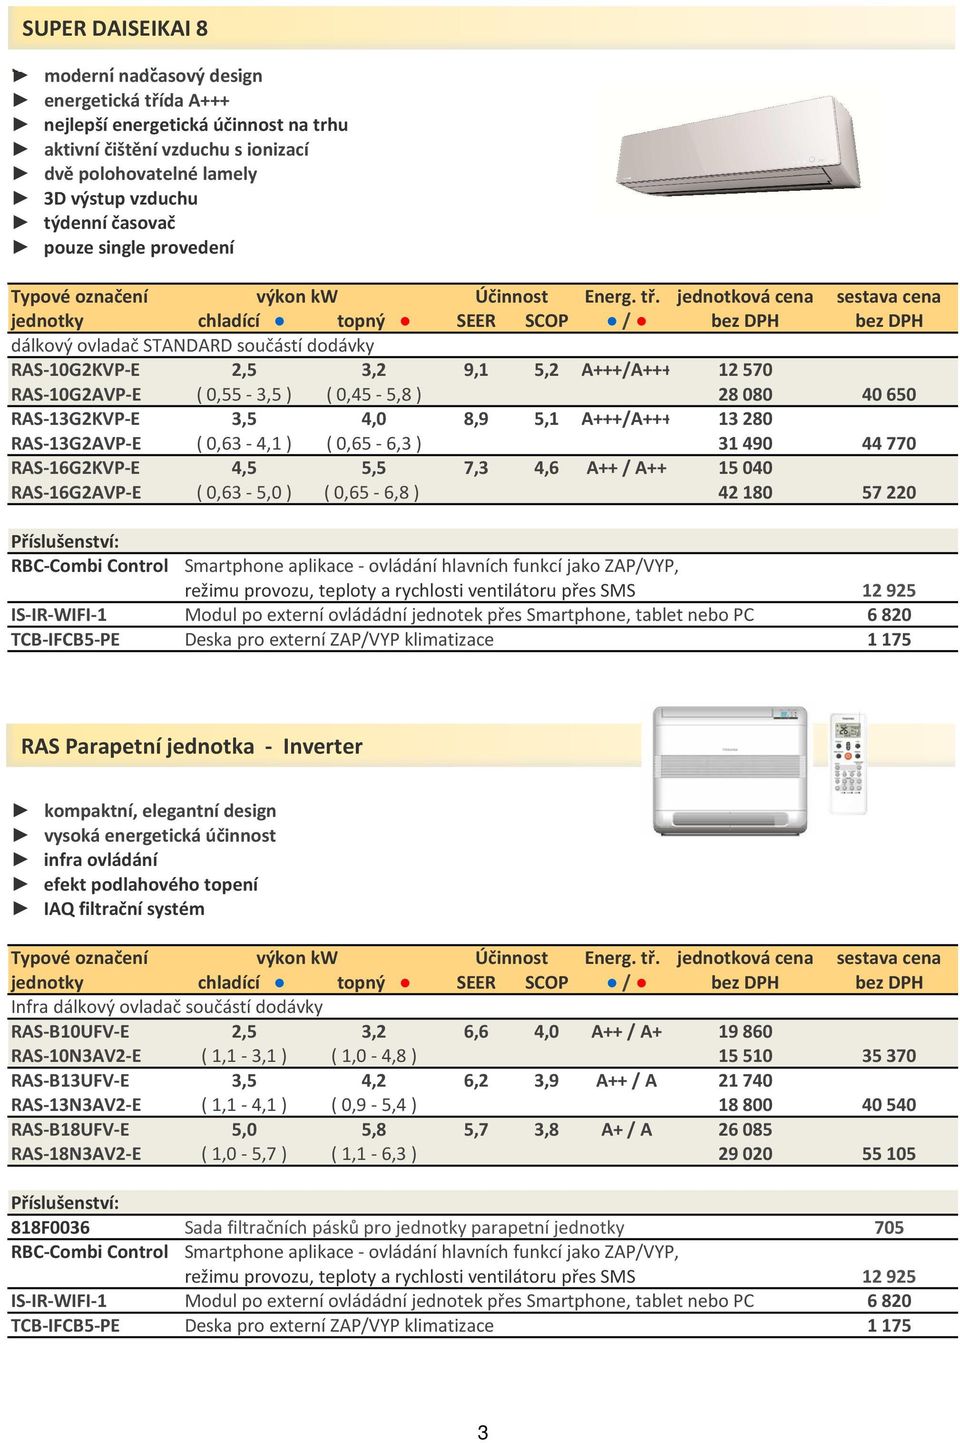 jednotková cena sestava cena jednotky chladící topný SEER SCOP / bez DPH bez DPH dálkový ovladač STANDARD součástí dodávky RAS-10G2KVP-E 2,5 3,2 9,1 5,2 A+++/A+++ 12 570 RAS-10G2AVP-E ( 0,55-3,5 ) (